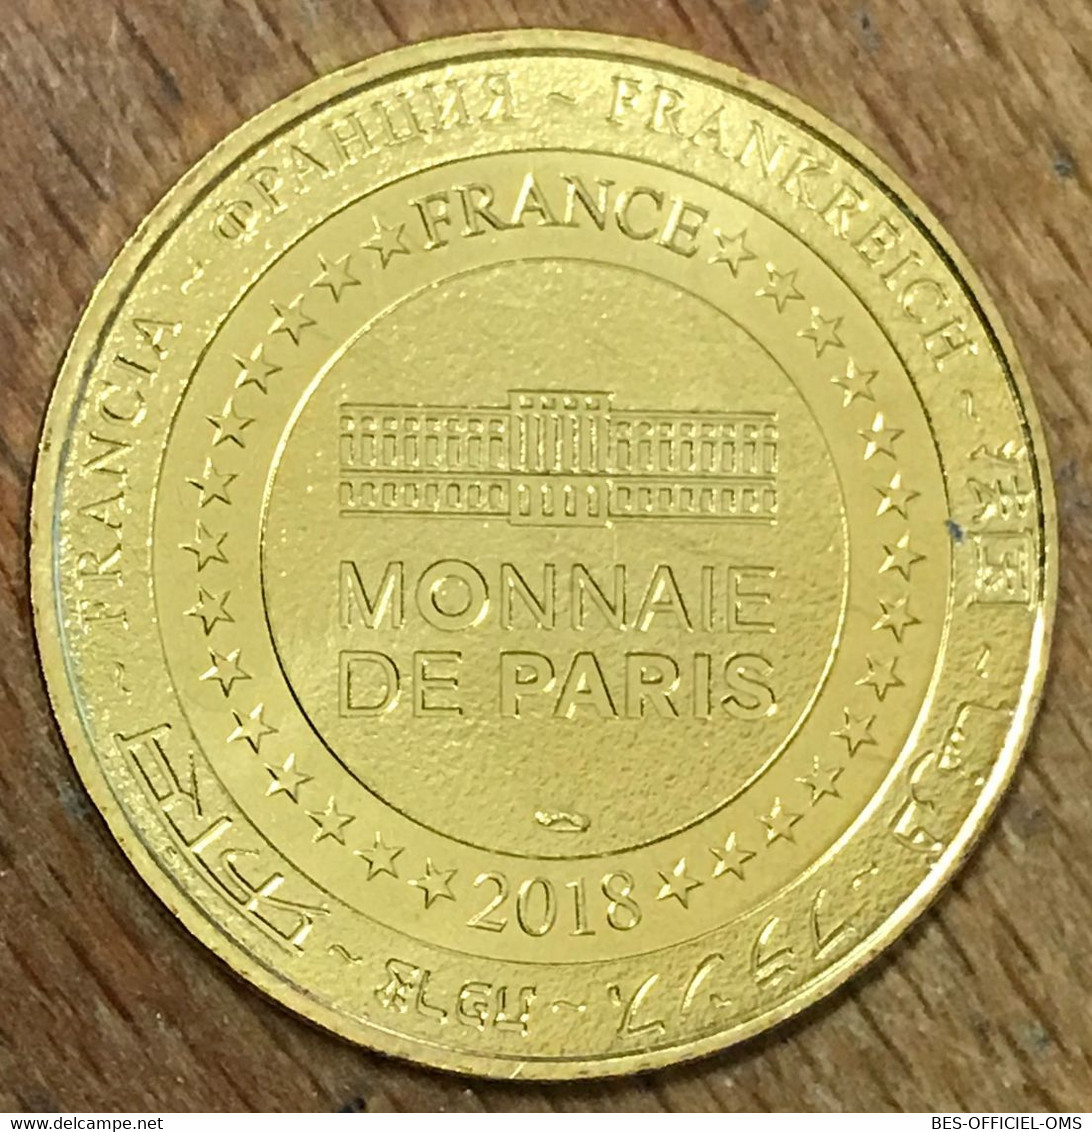 75009 PARIS MUSÉE GRÉVIN COLONE JACKSON MDP 2018 MEDAILLE SOUVENIR MONNAIE DE PARIS JETON TOURISTIQUE MEDALS COINS TOKEN - 2018